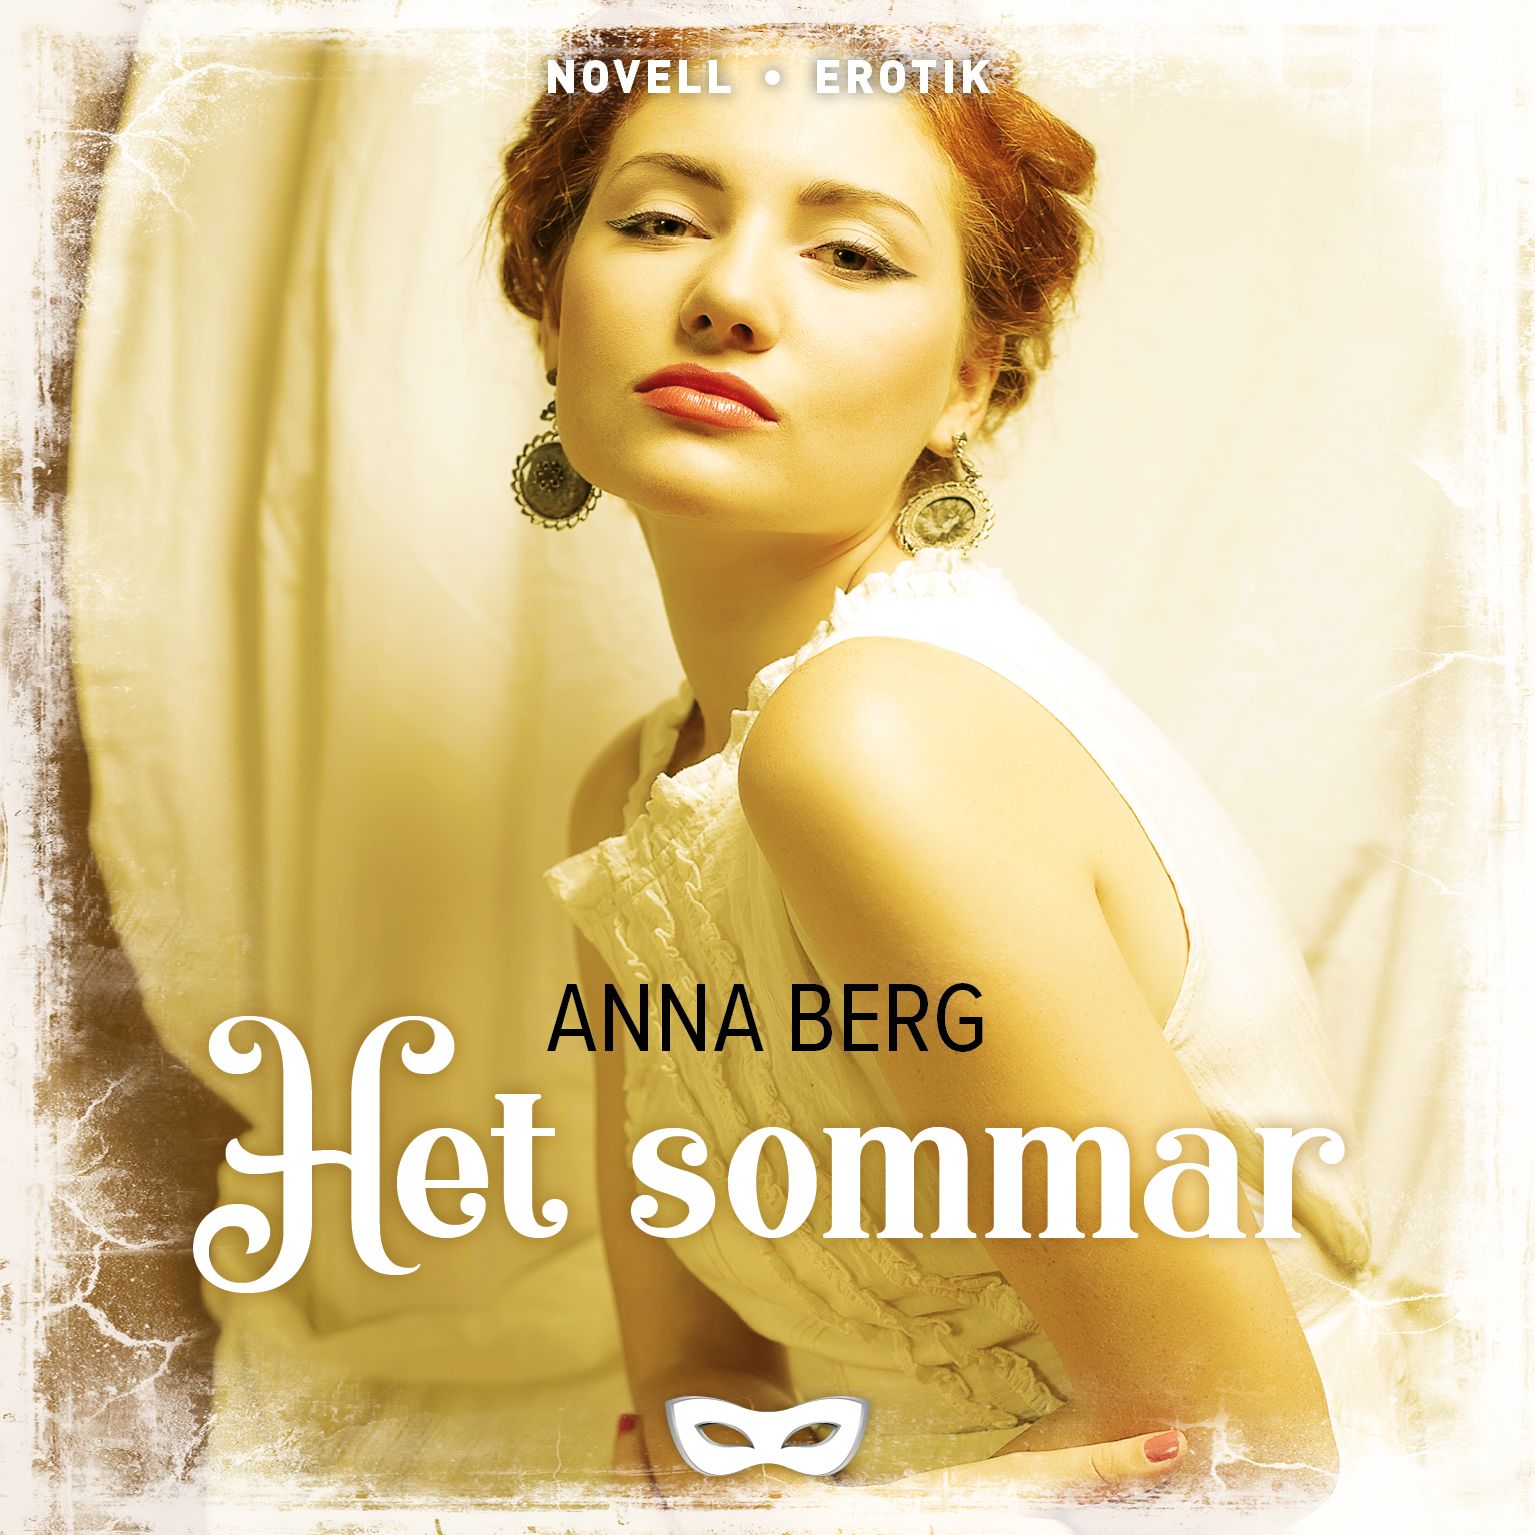 Het sommar, audiobook by Anna Berg